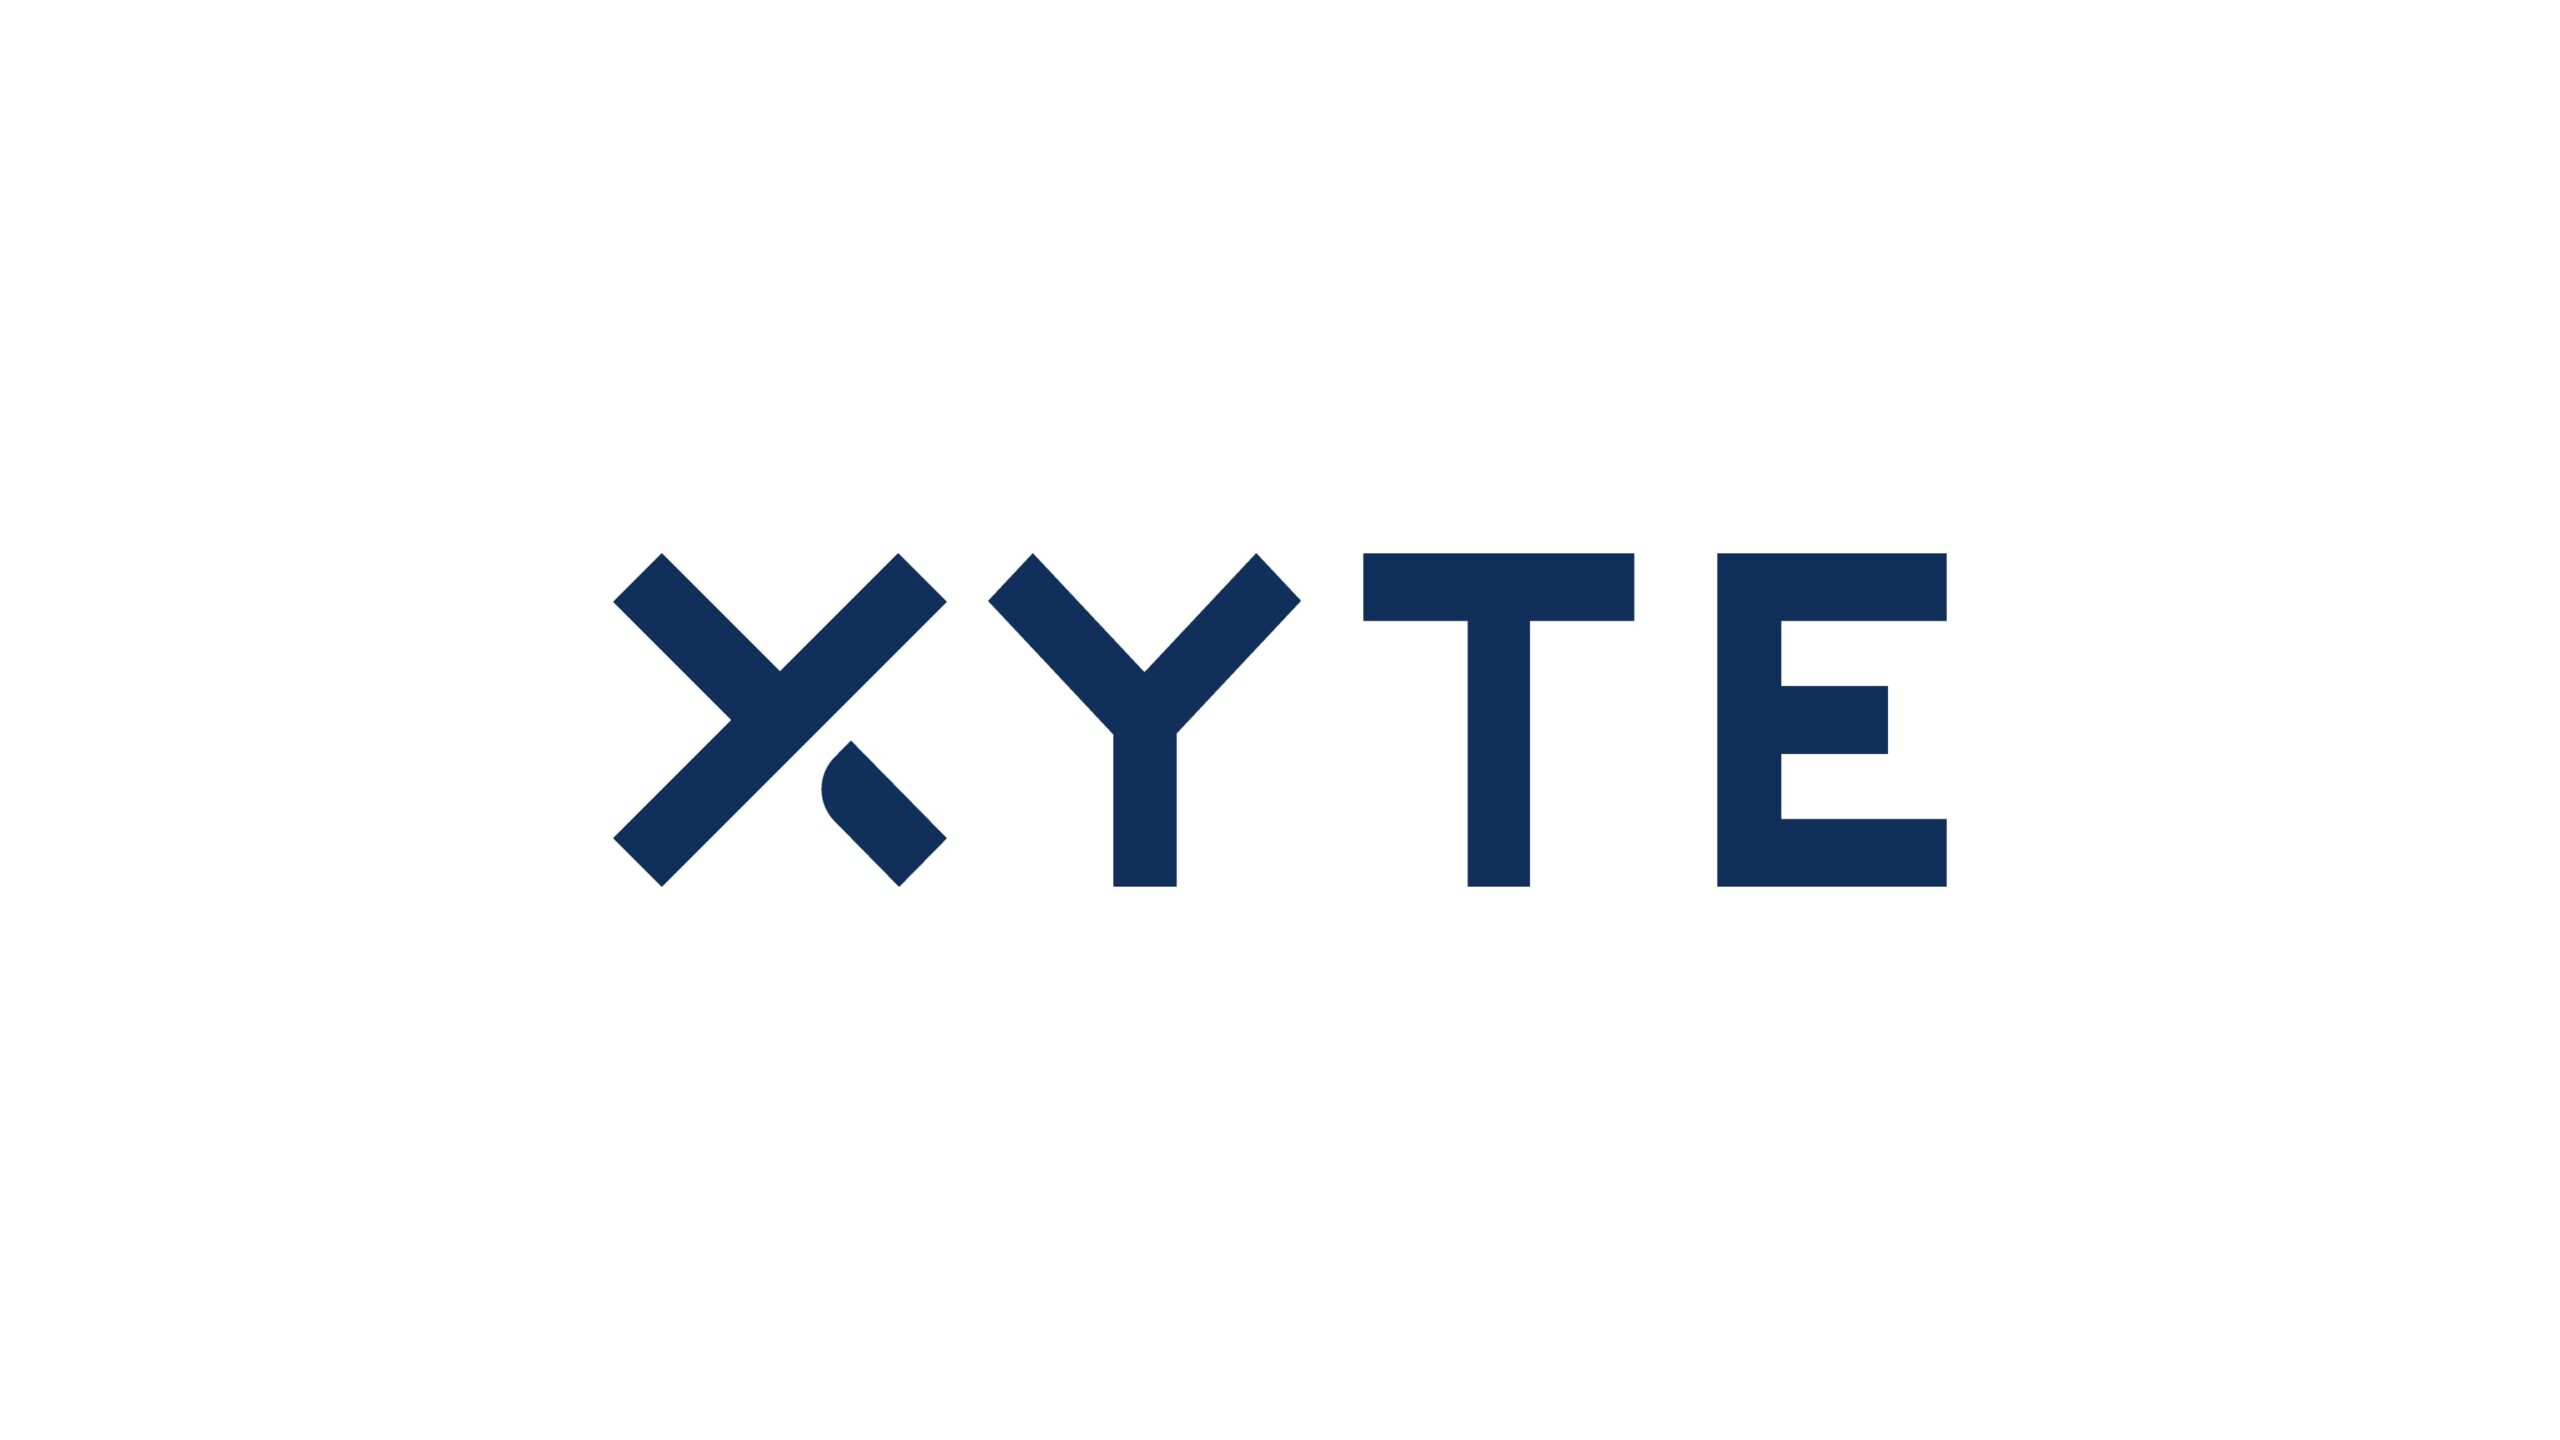 Xyte社、あらゆるハードウェア・メーカーがサブスクリプション製品を開発できるようにするために3,000万ドルを調達